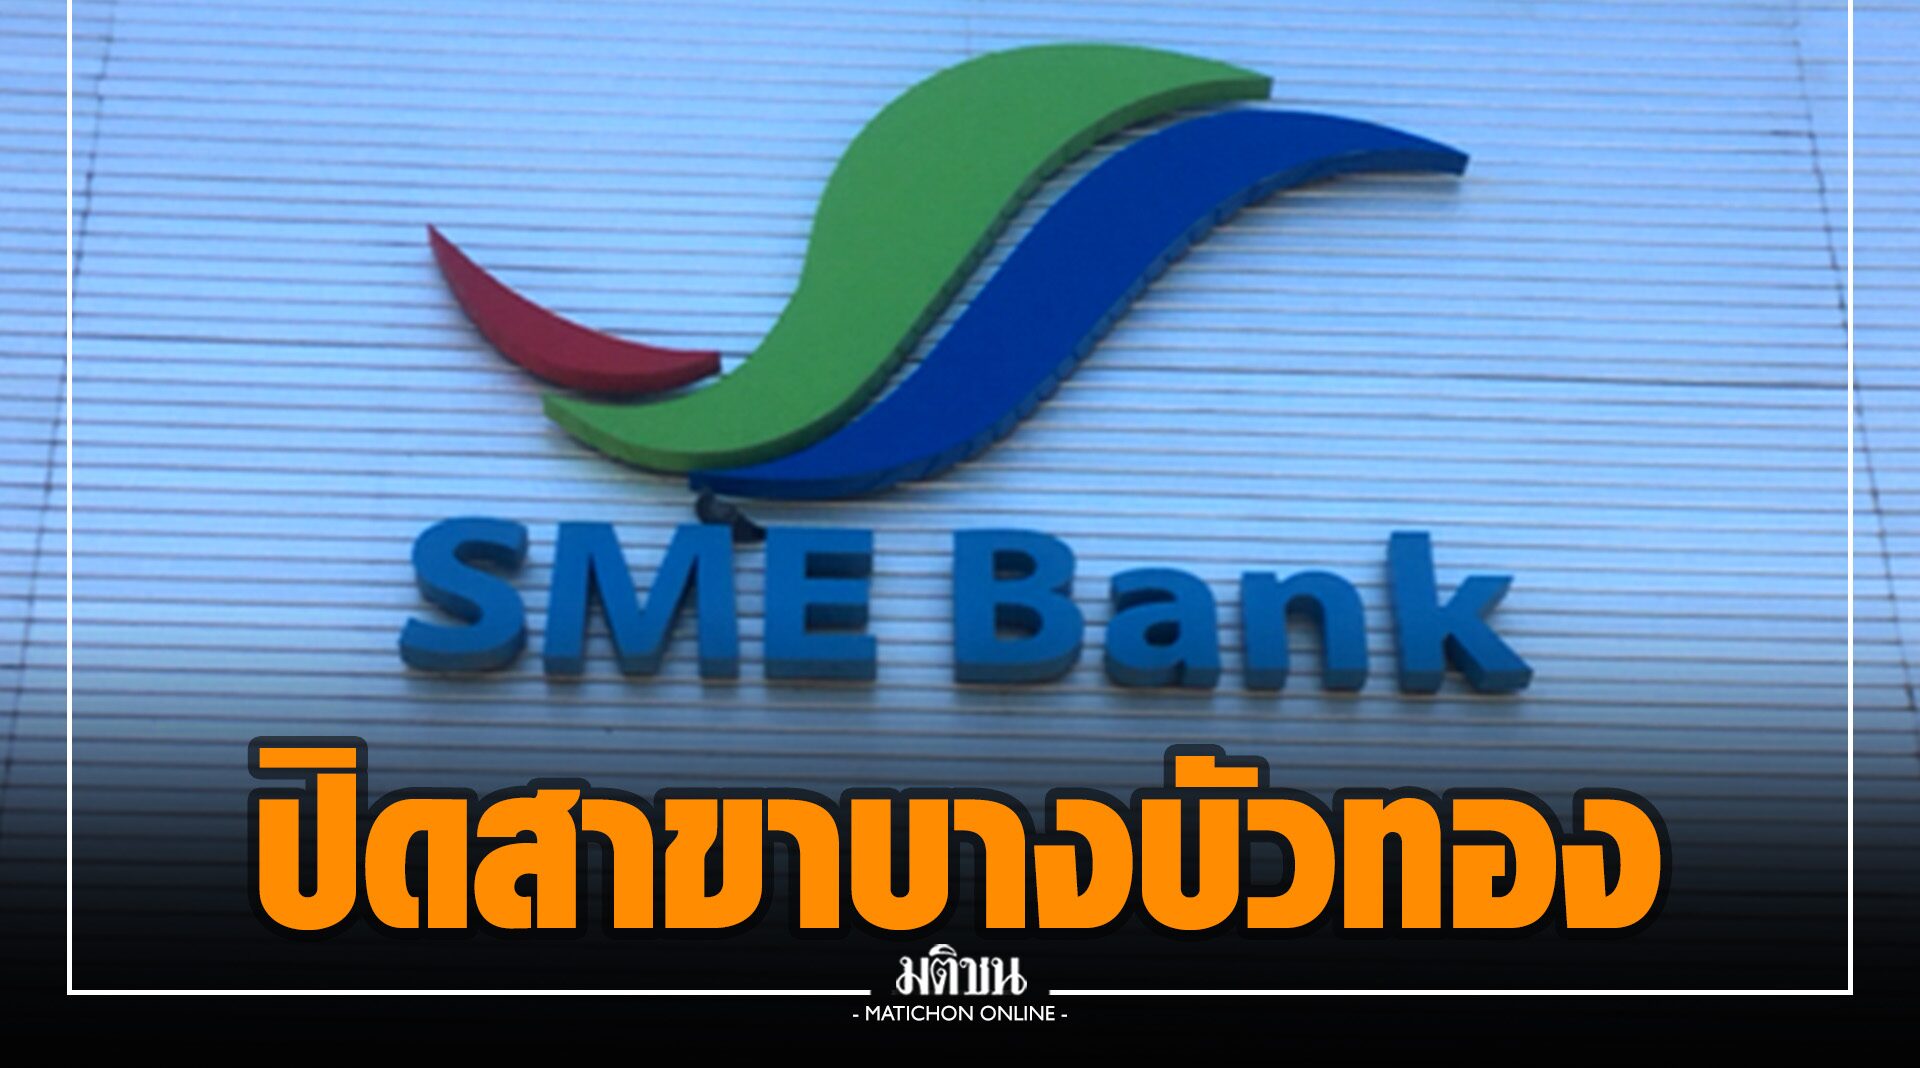 SME D Bank แจงปิดสาขาบางบัวทองชั่วคราว 4-6 ม.ค. ป้องโควิด